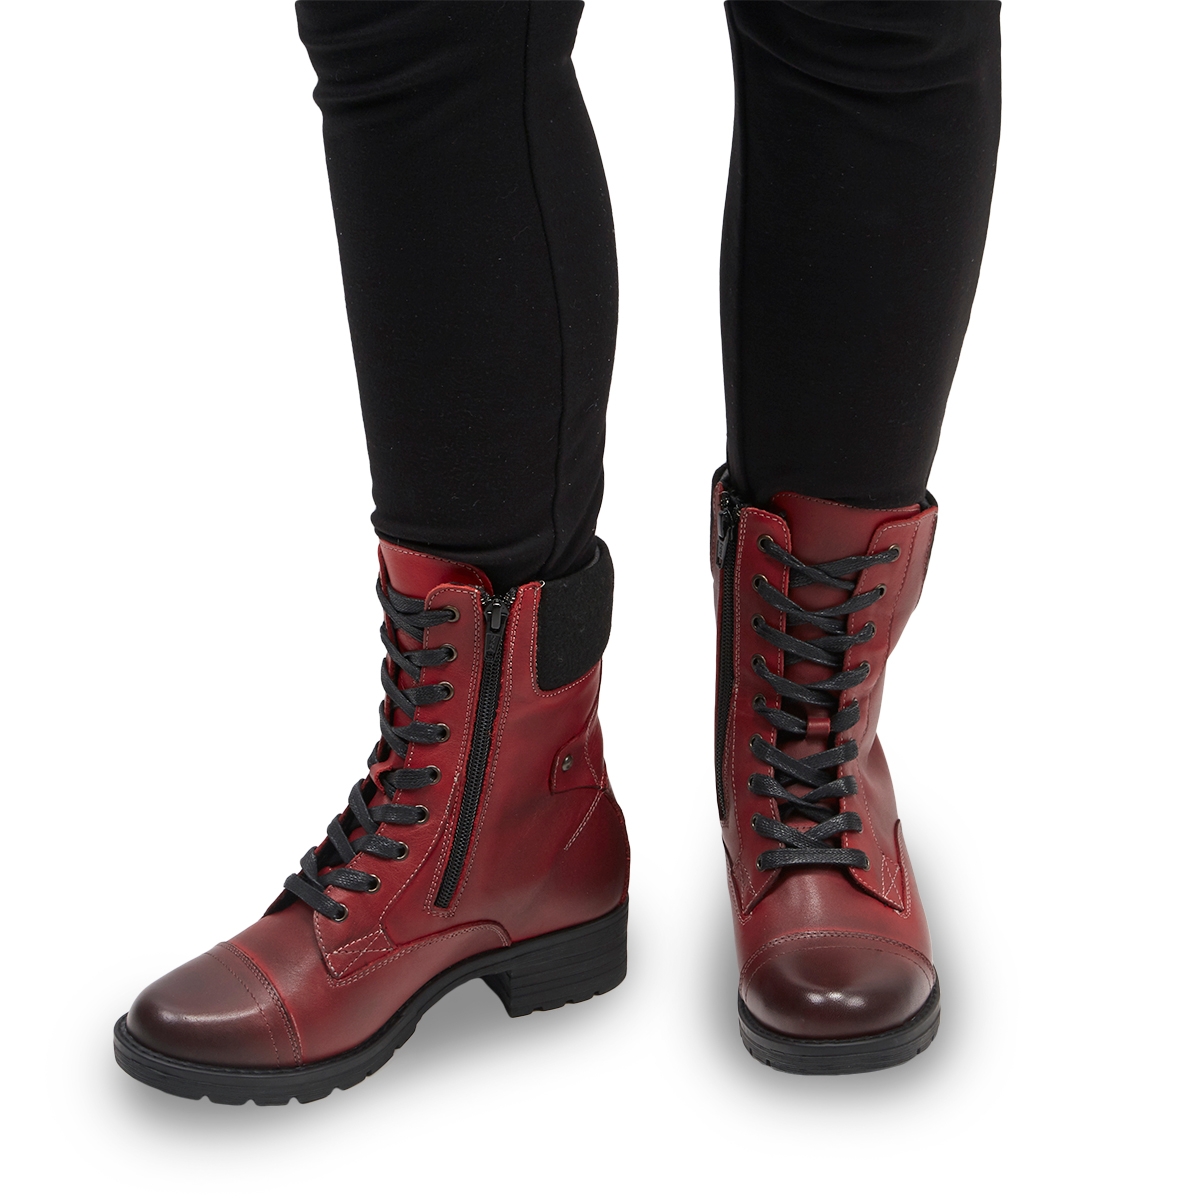 DEEDEE 3 red combat boots | SoftMoc 